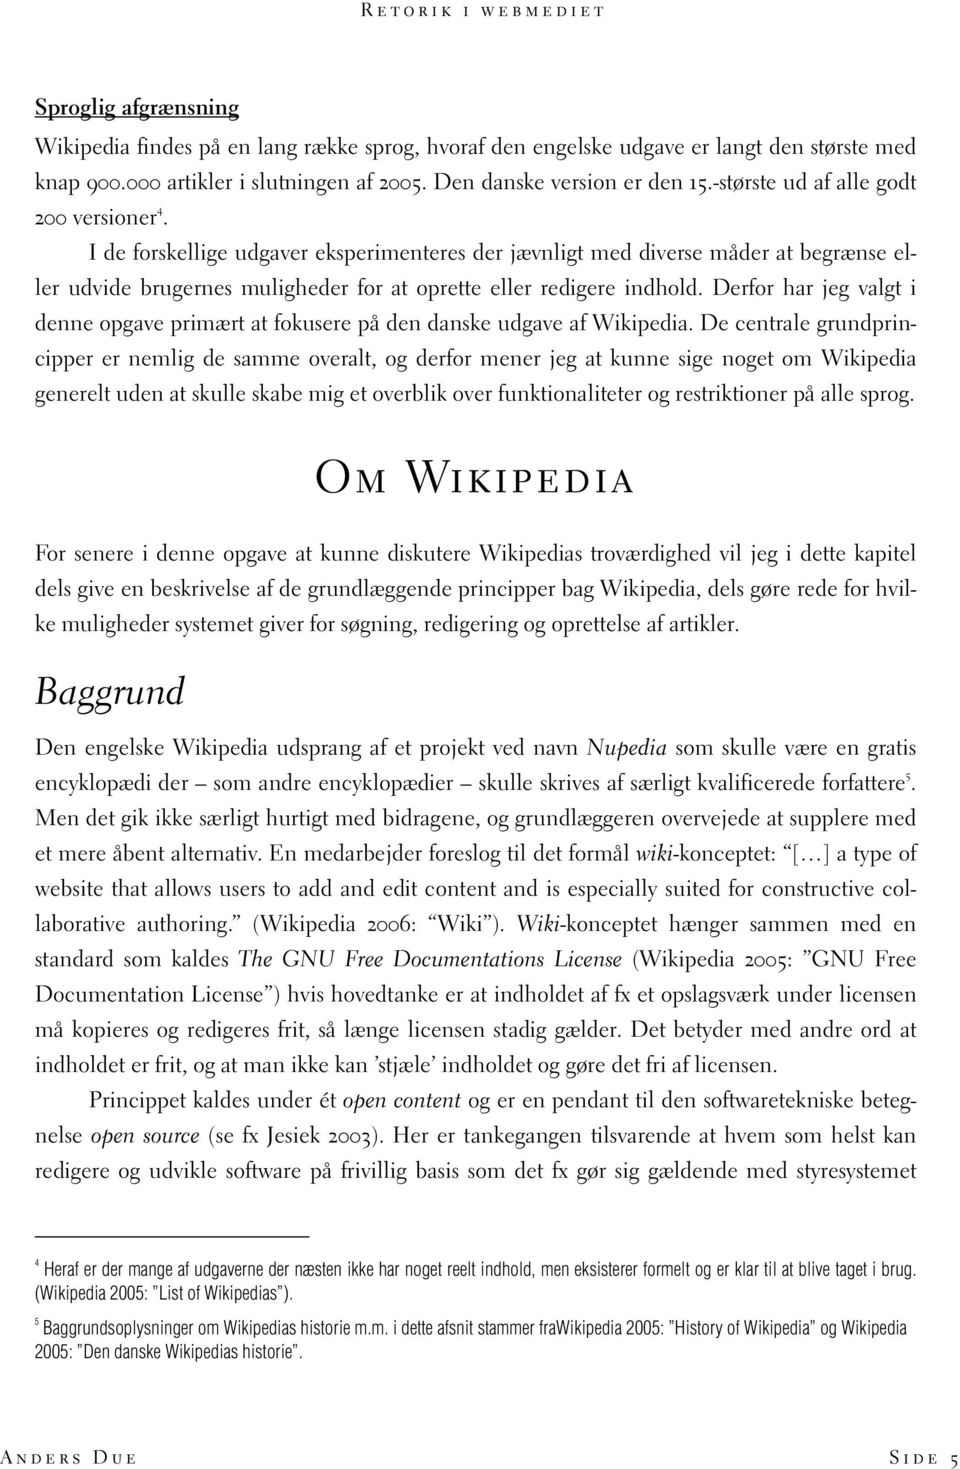 Derfor har jeg valgt i denne opgave primært at fokusere på den danske udgave af Wikipedia.